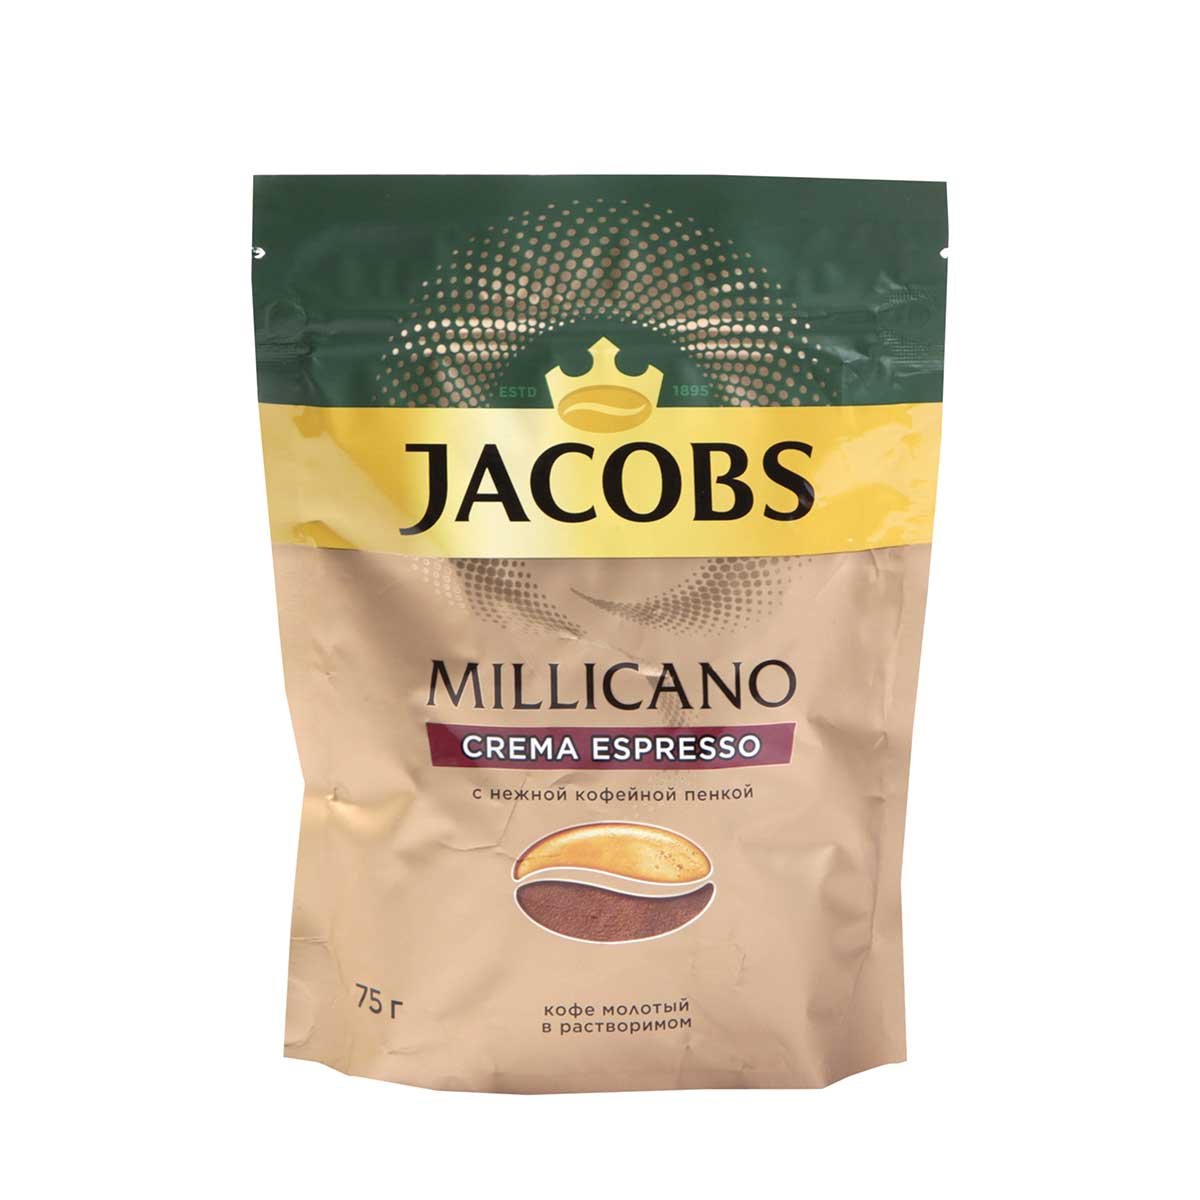 Крема эспрессо. Jacobs Millicano 160г 1шт. Кофе Якобс раст.Millicano 200г. Эспрессо крема. Кофе Монарх миллиграно крема эспресс.